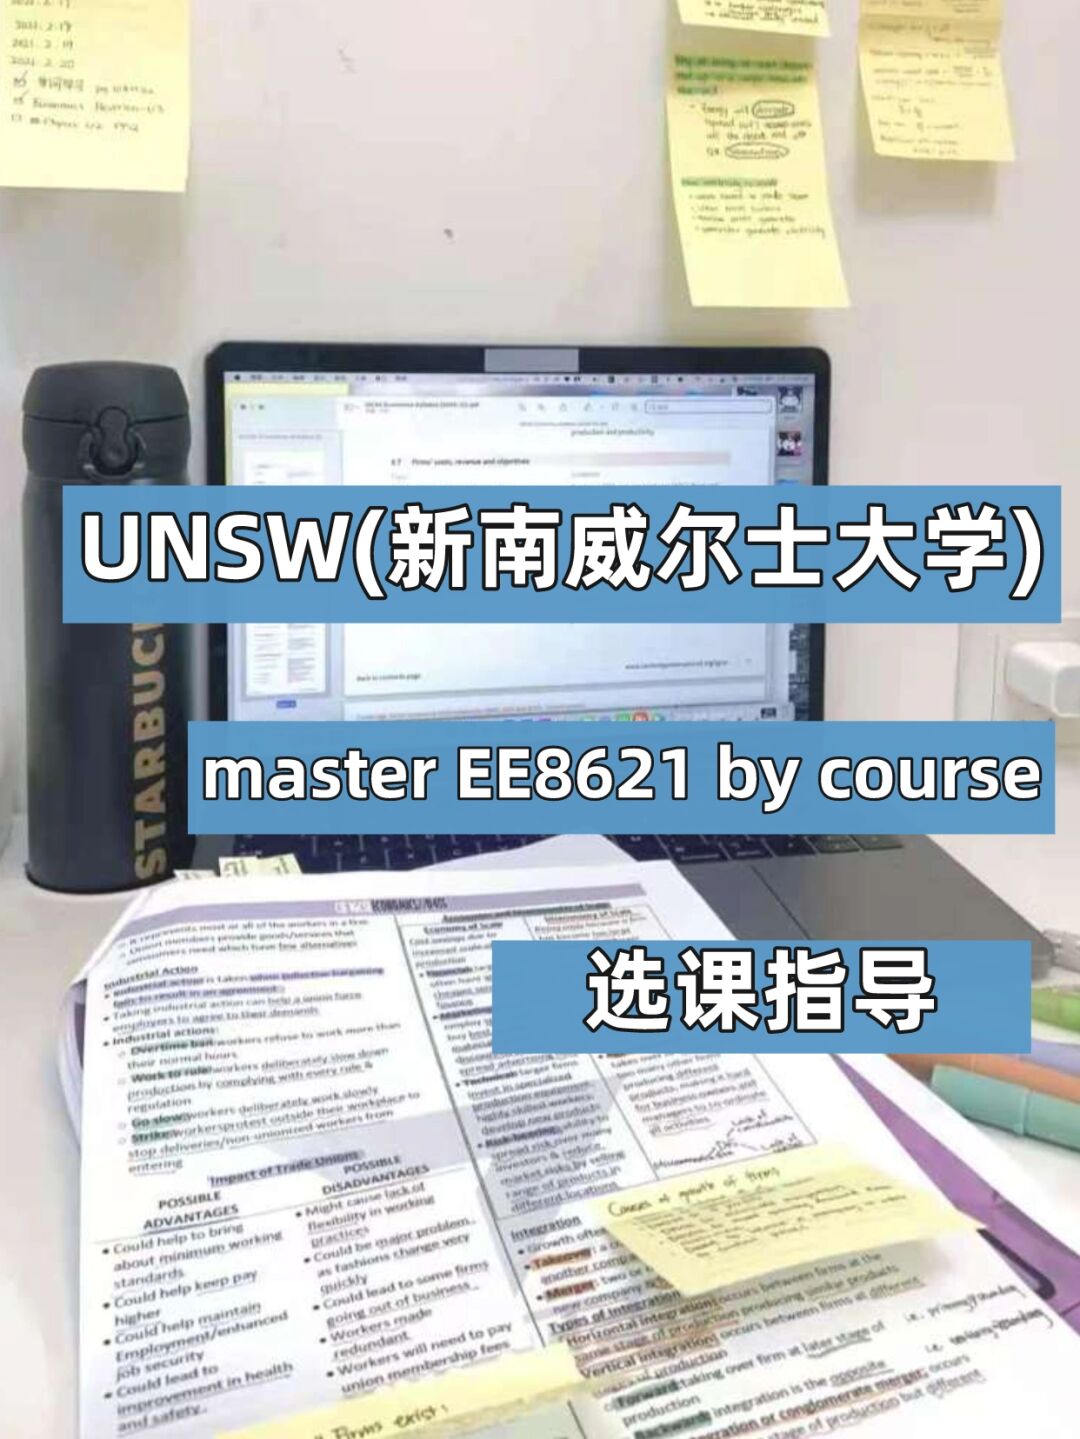 留学生澳大利亚代写 – UNSW master选课指导 – 留学生代写